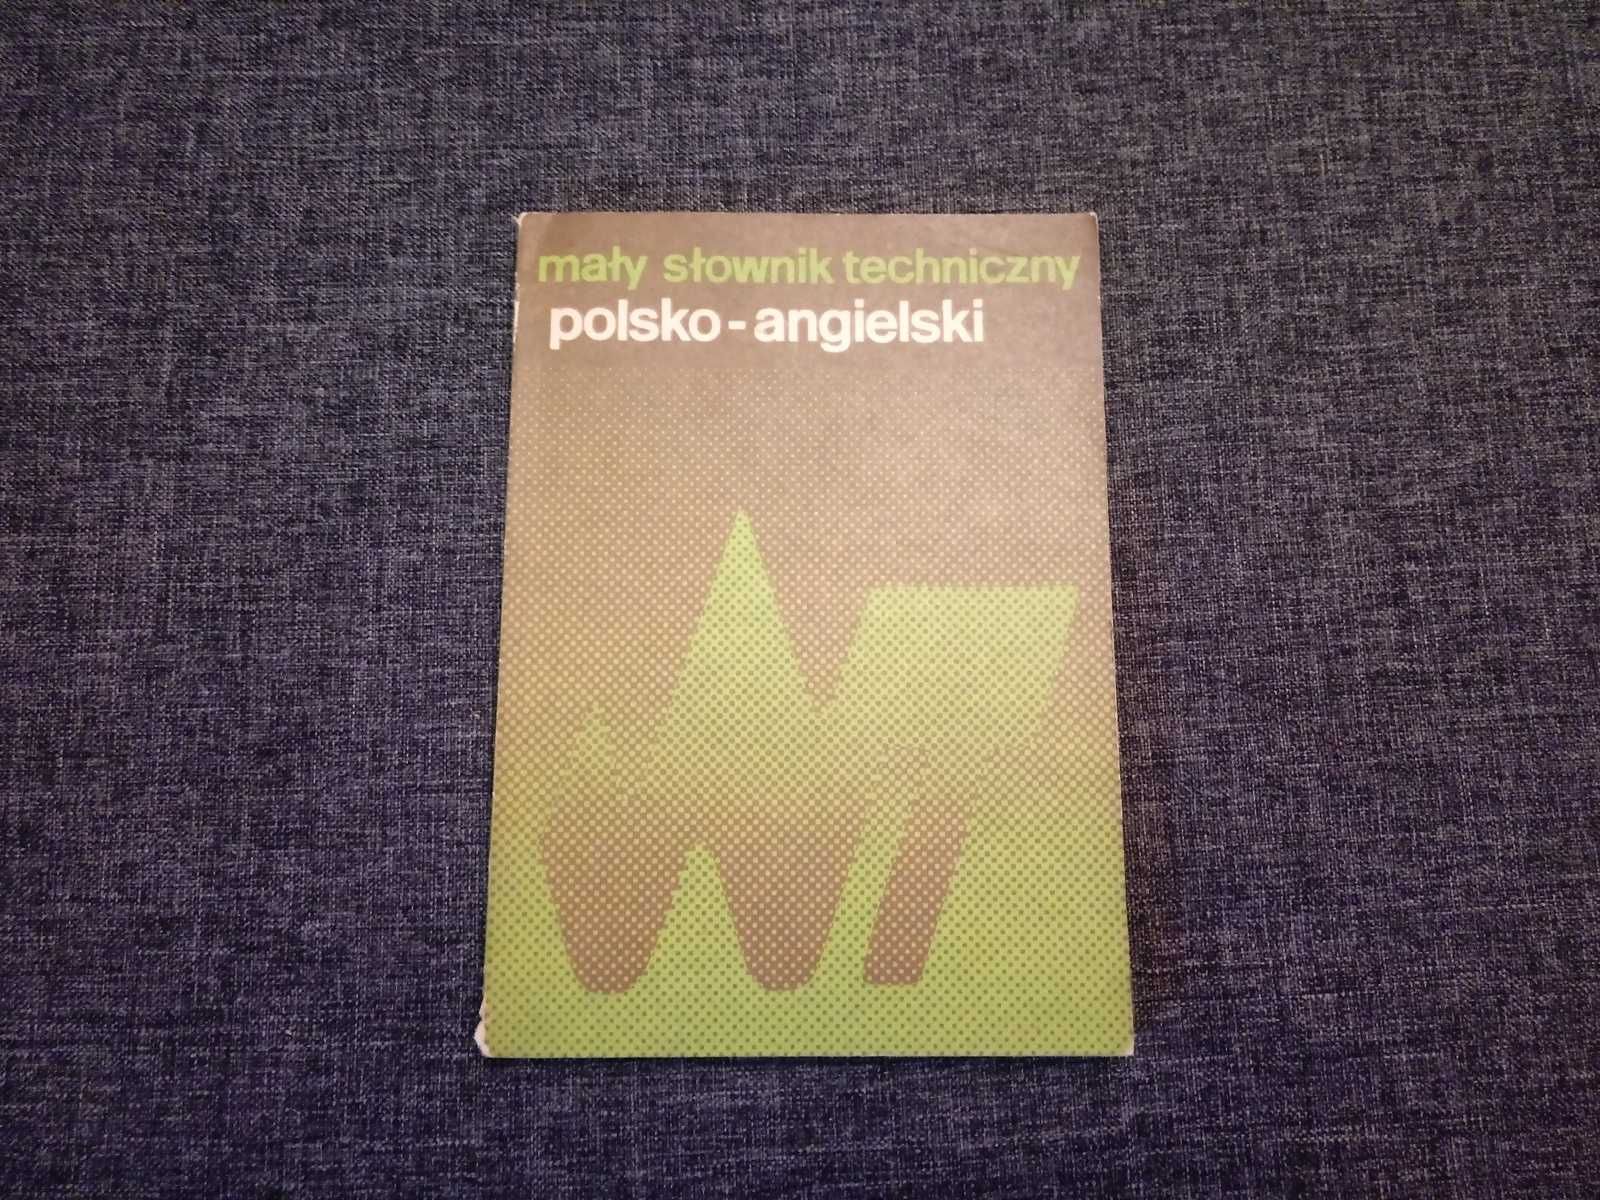 Mały Słownik Techniczny Polsko-Angielski Wyd. Naukowo-Techniczne 1986r